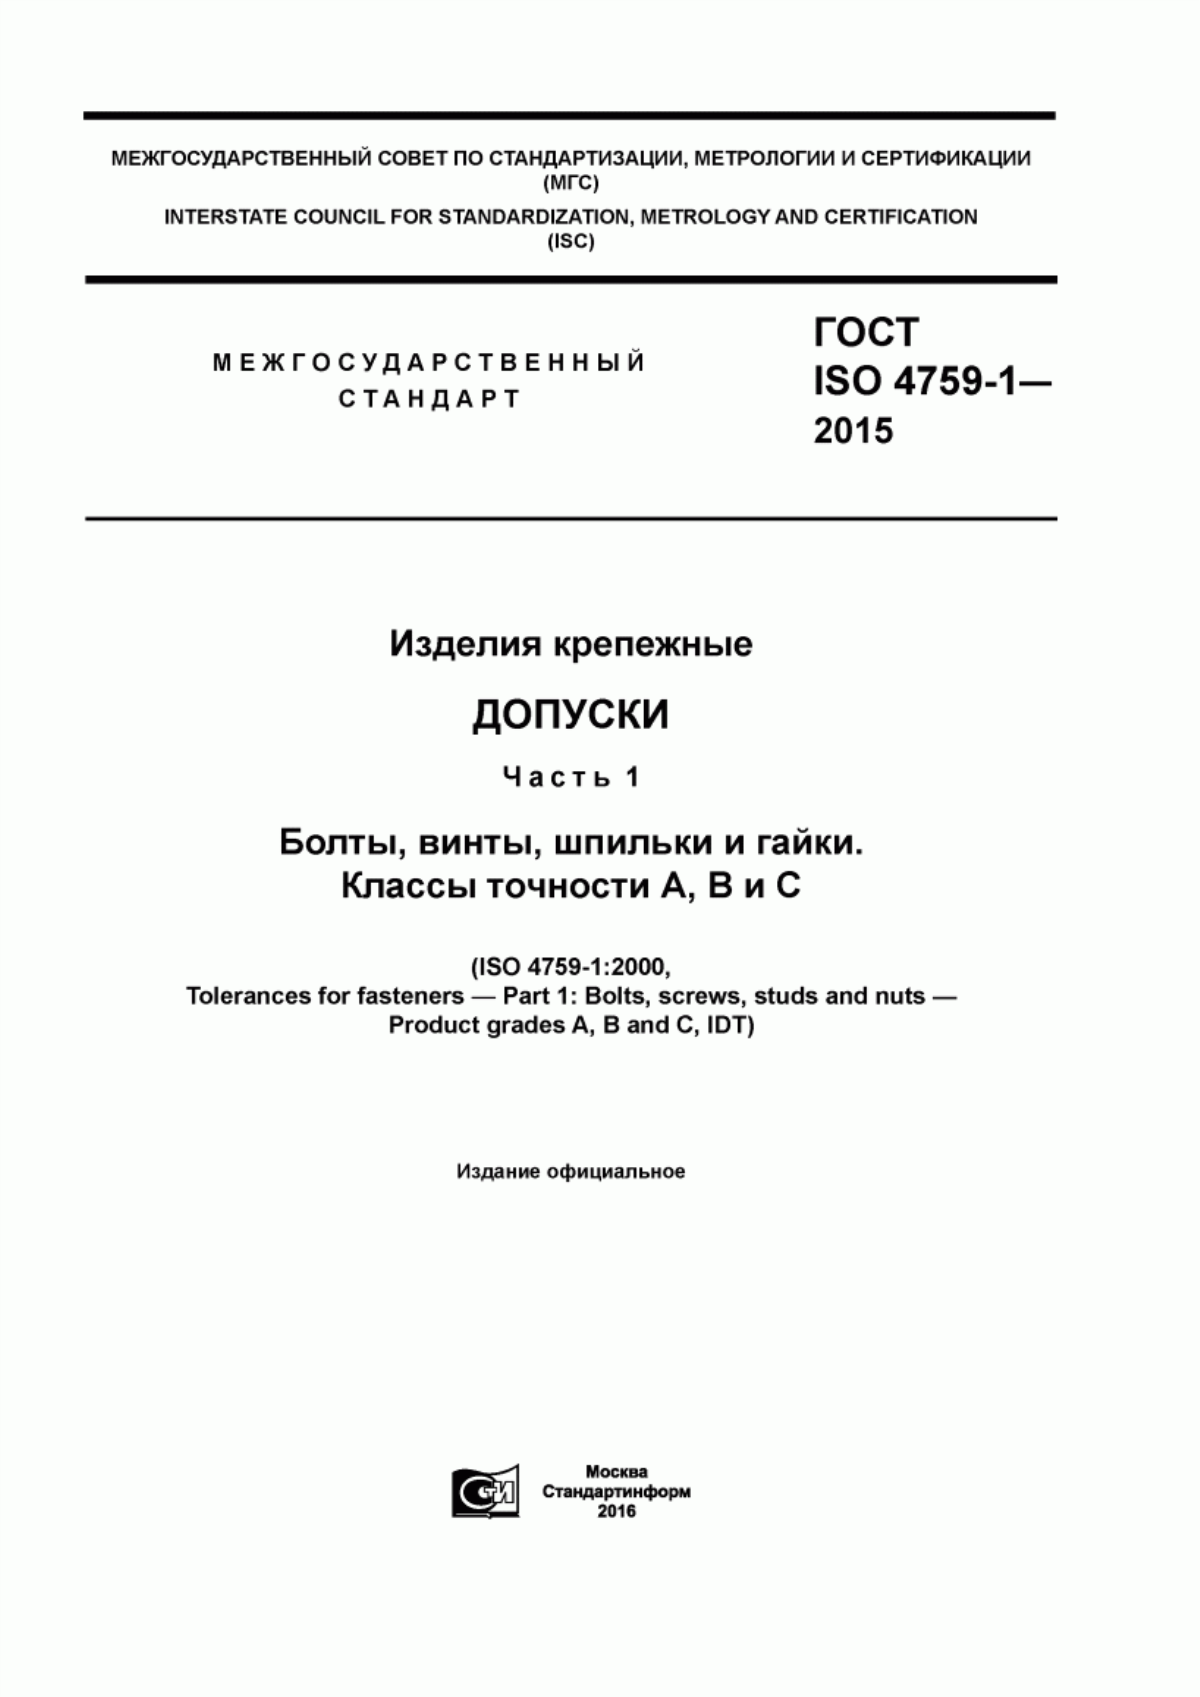 ГОСТ ISO 4759-1-2015 Изделия крепежные. Допуски. Часть 1. Болты, винты, шпильки и гайки. Классы точности А, В и С